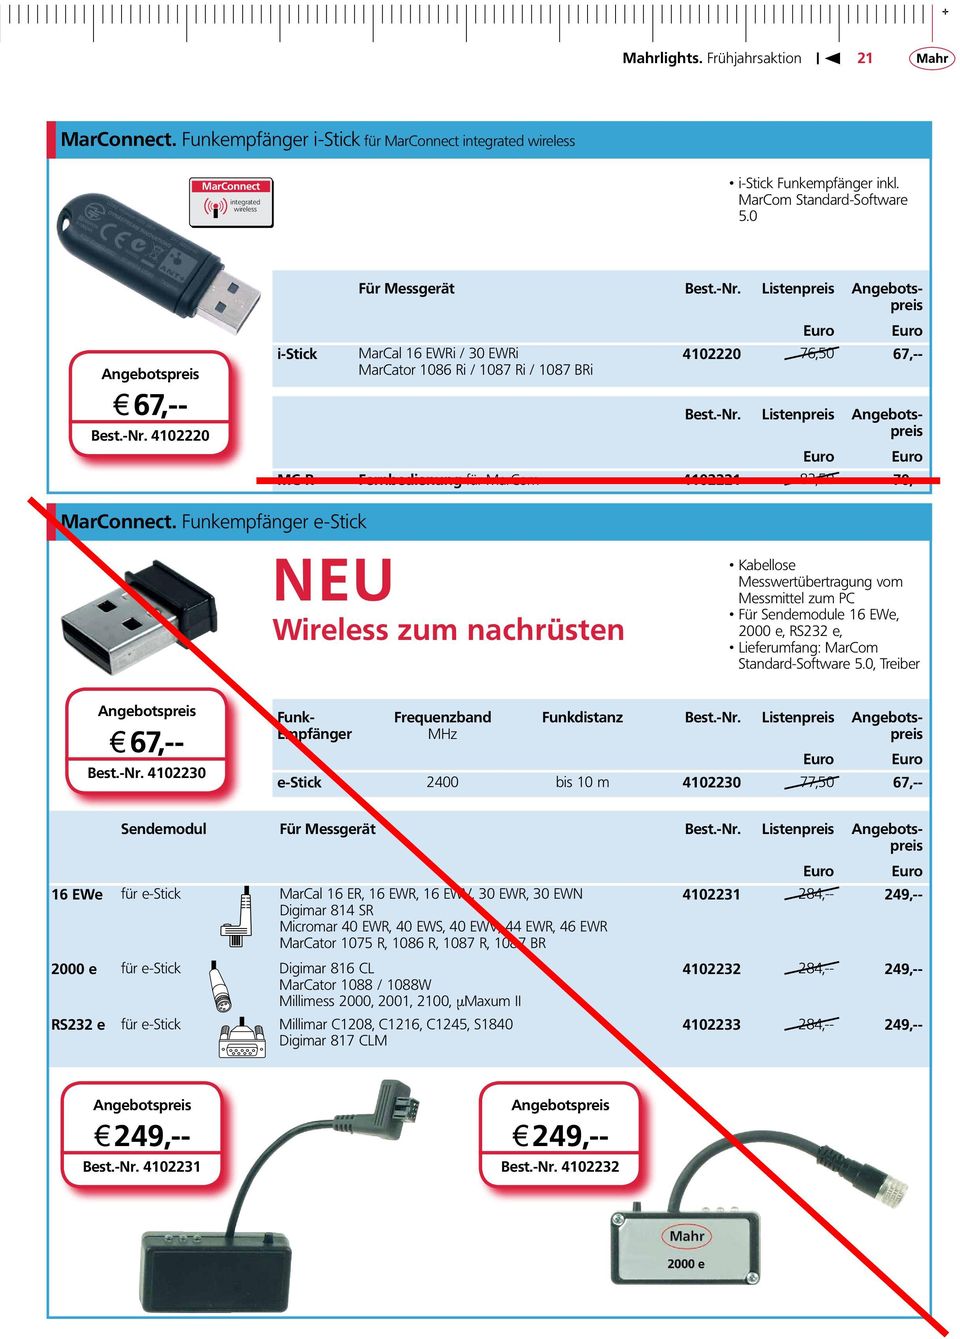 Funkempfänger e-stick NEU Wireless zum nachrüsten Kabellose Messwertübertragung vom Messmittel zum PC Für Sendemodule 16 EWe, 2000 e, RS232 e, Lieferumfang: MarCom Standard-Software 5.